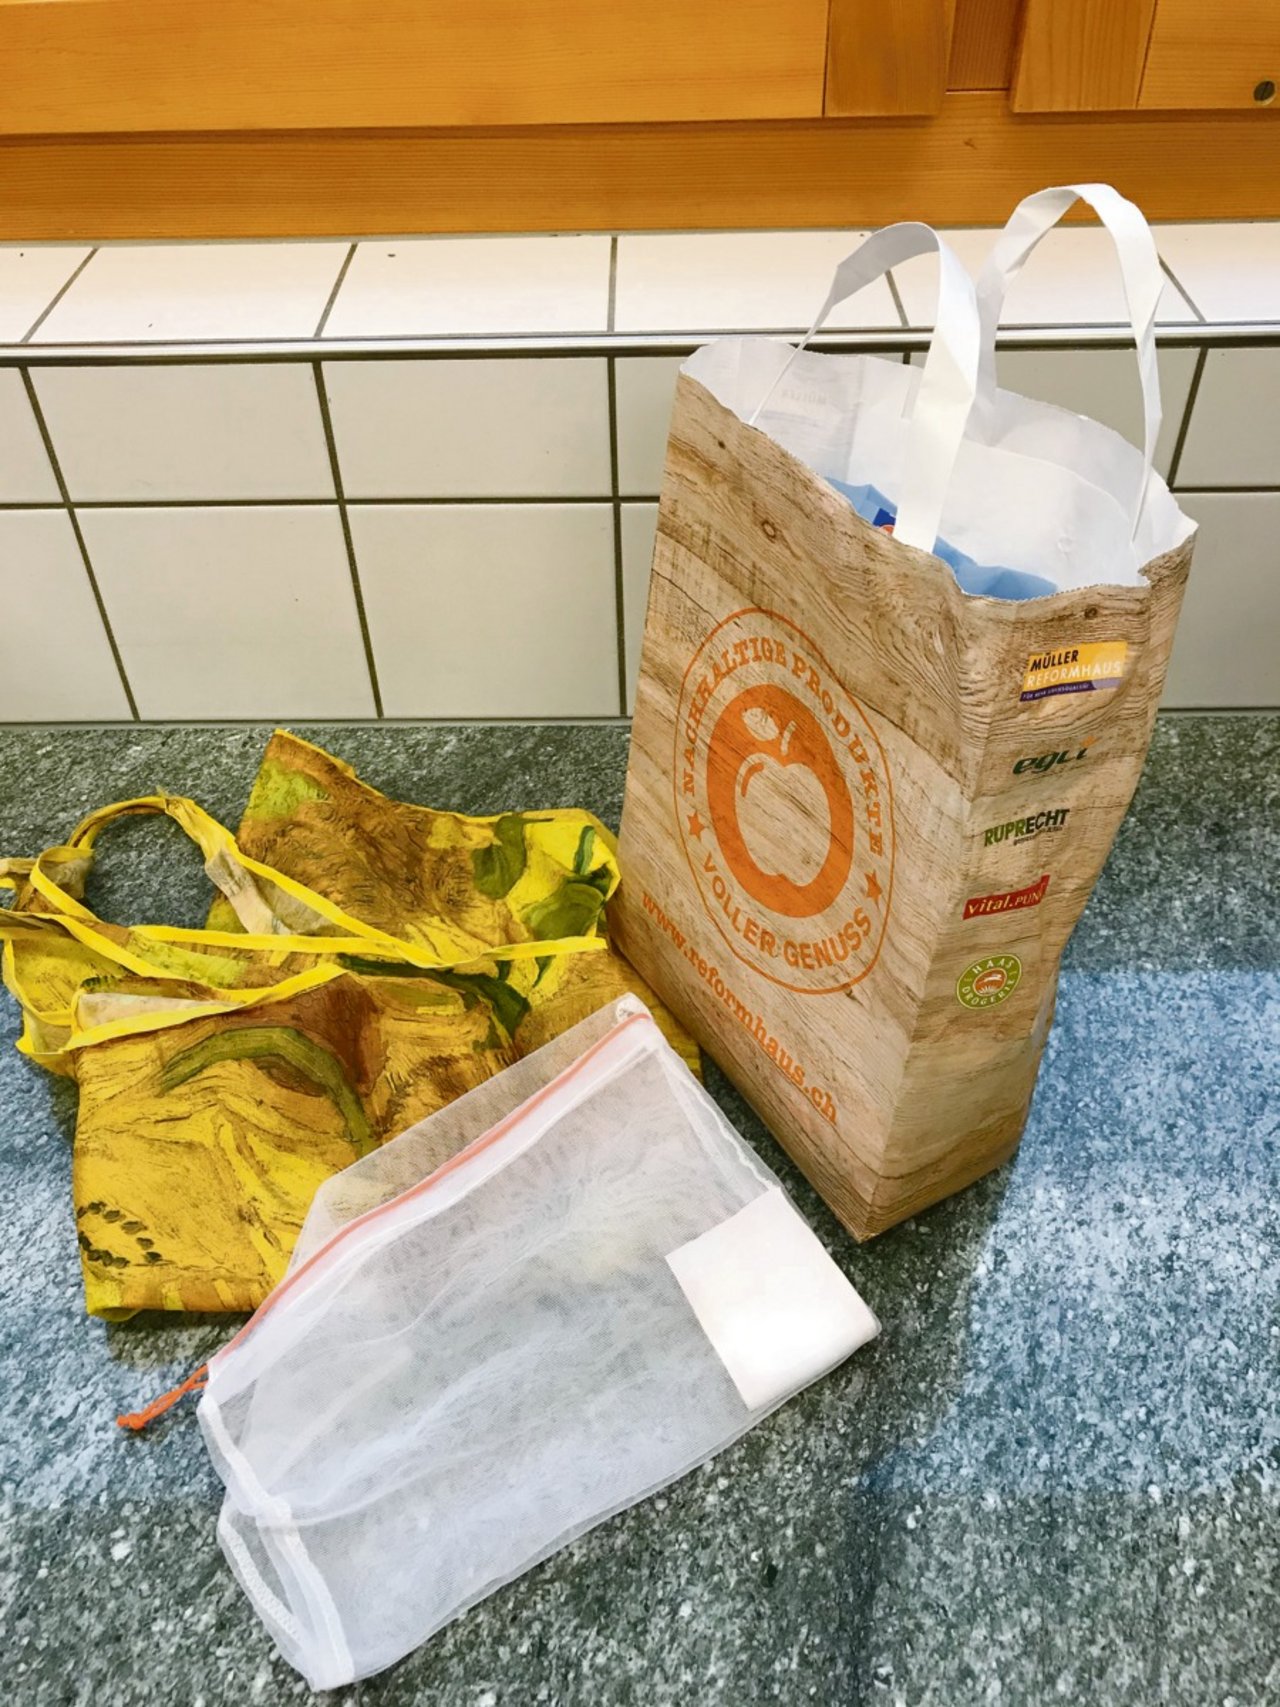 Taschen und Säcklein beim Einkaufen selber mitbringen: Eine kleine Tat, vermindert jedoch Abfall.(Bild Marlis Hodel)